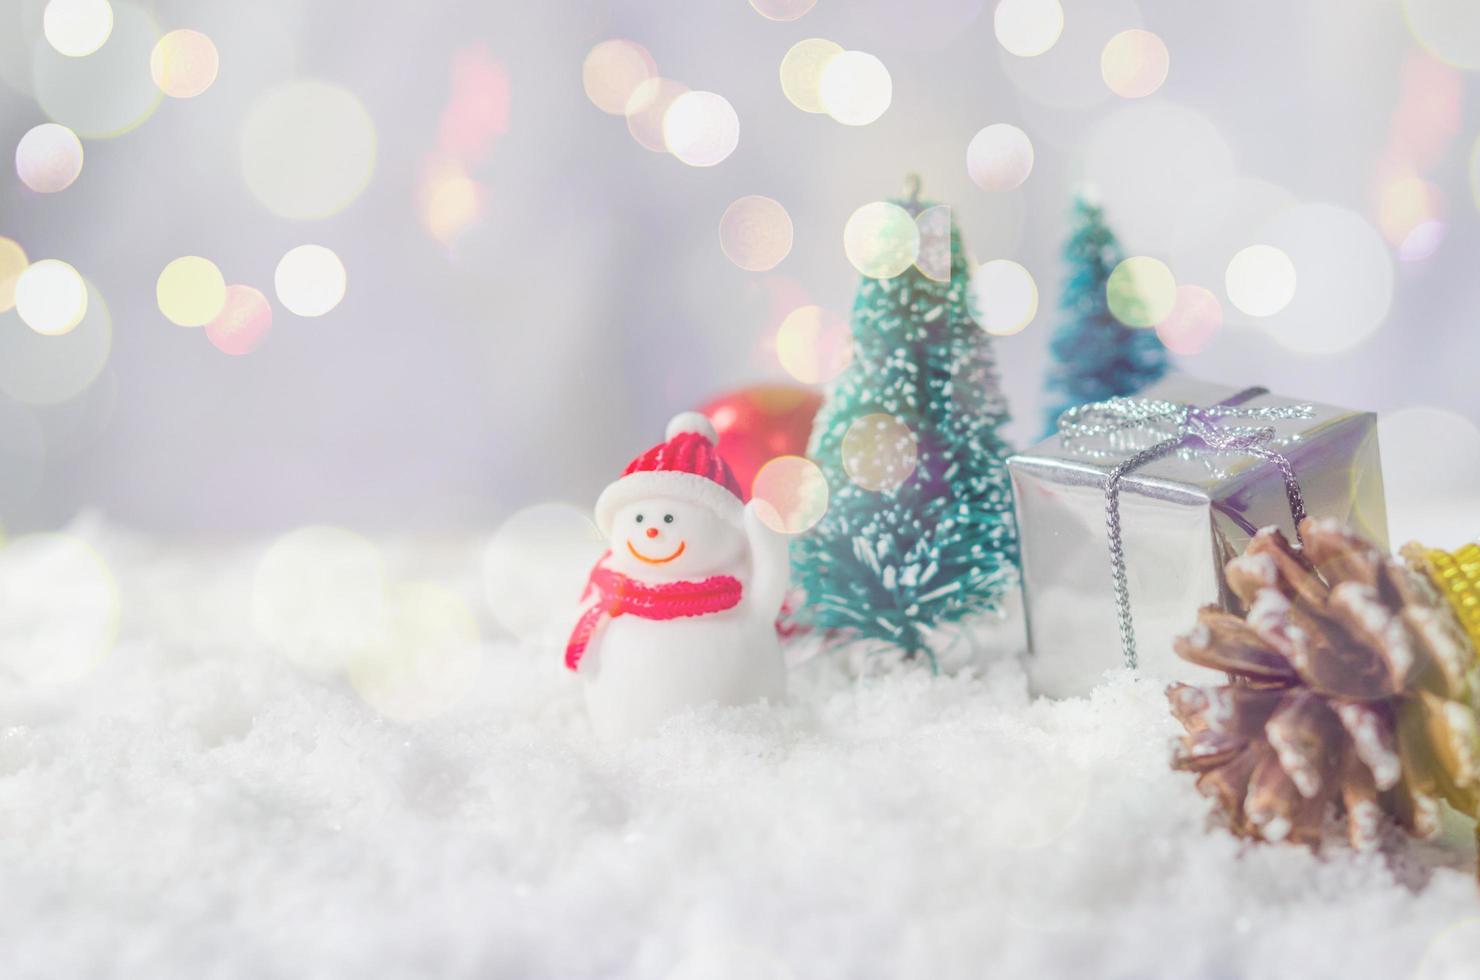 adornos navideños en miniatura en la nieve foto